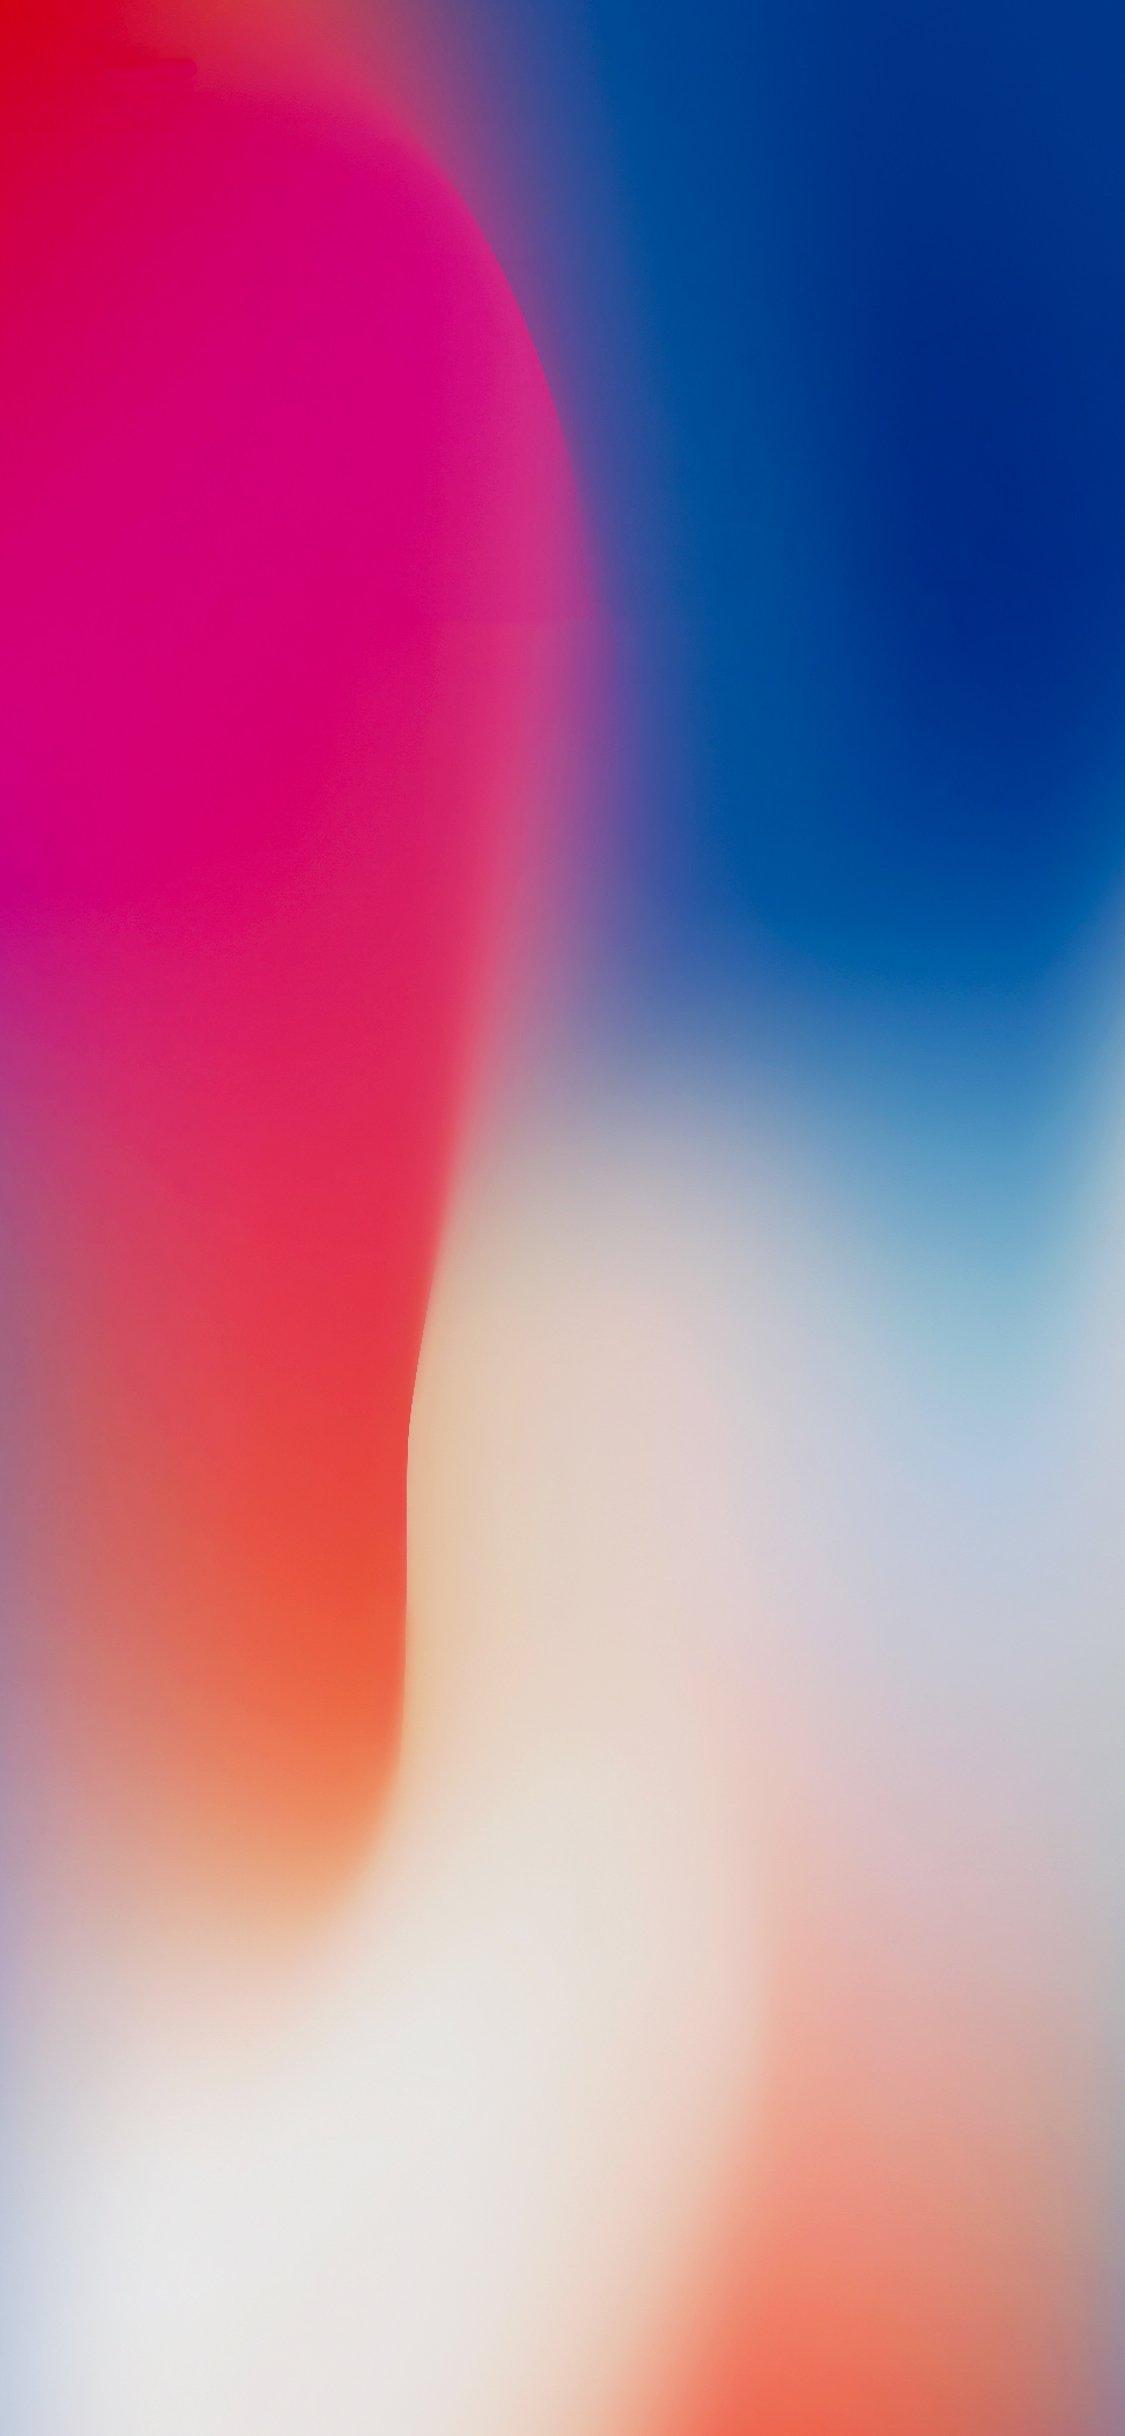 apple default wallpaper iphone